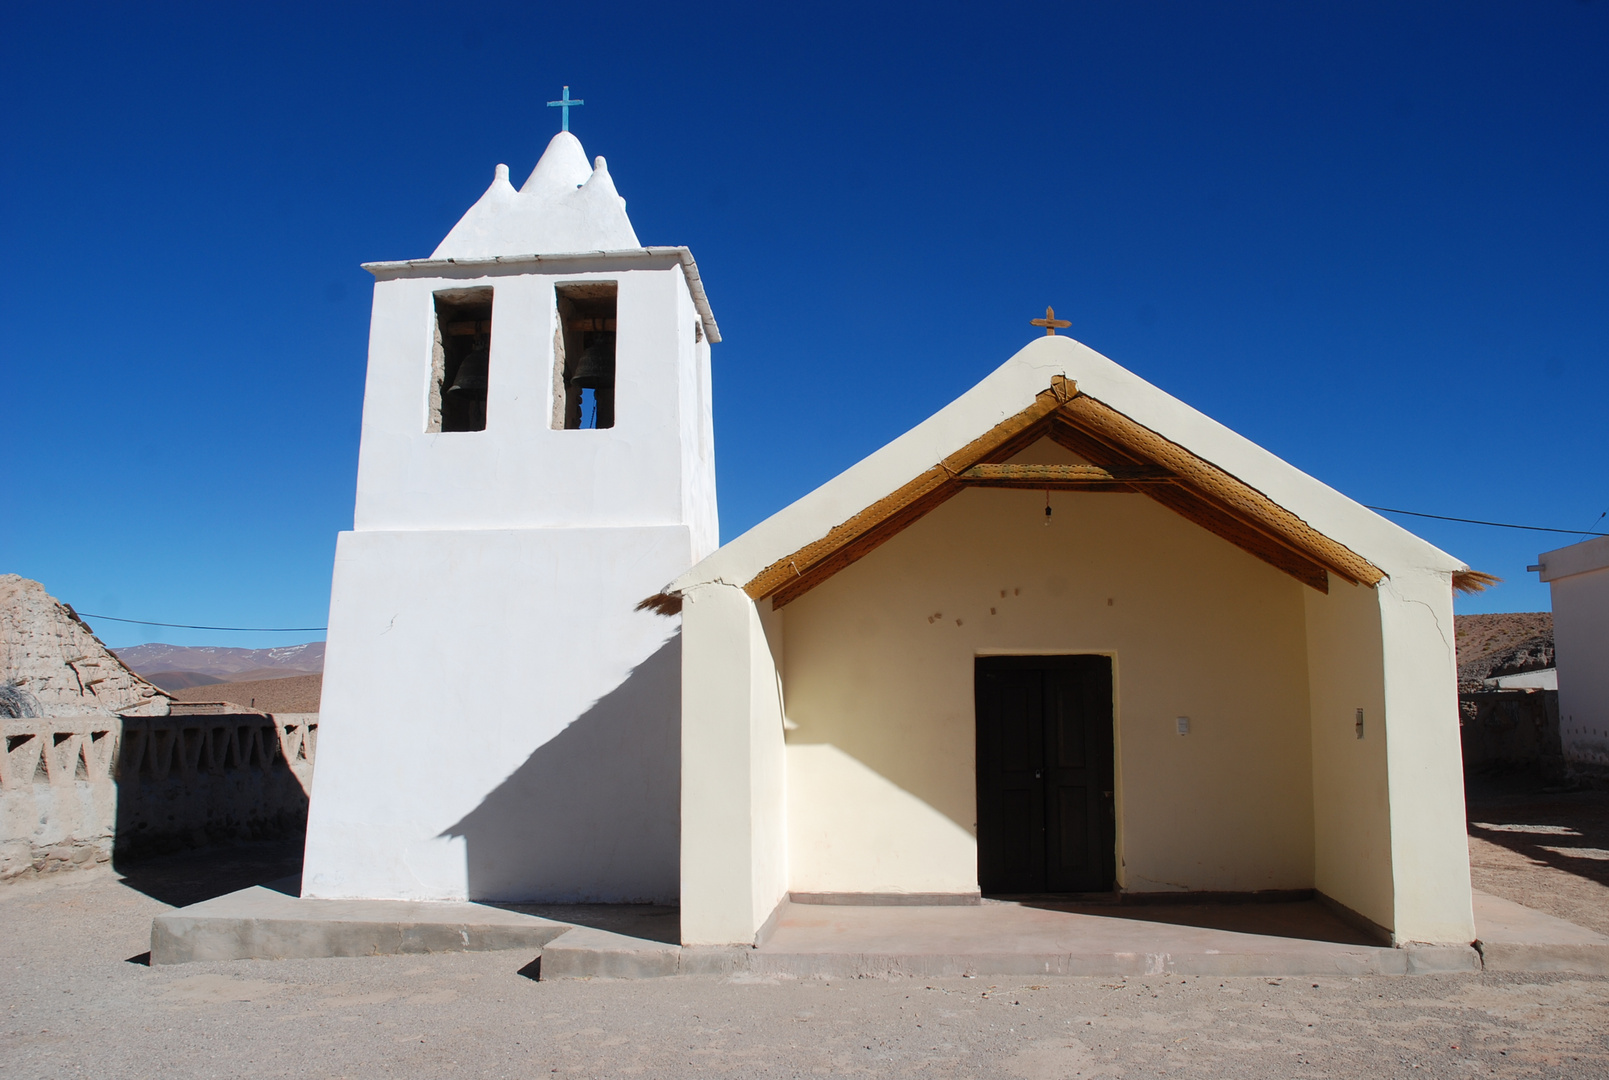 Blauer Himmel und Kirche in Argentinien